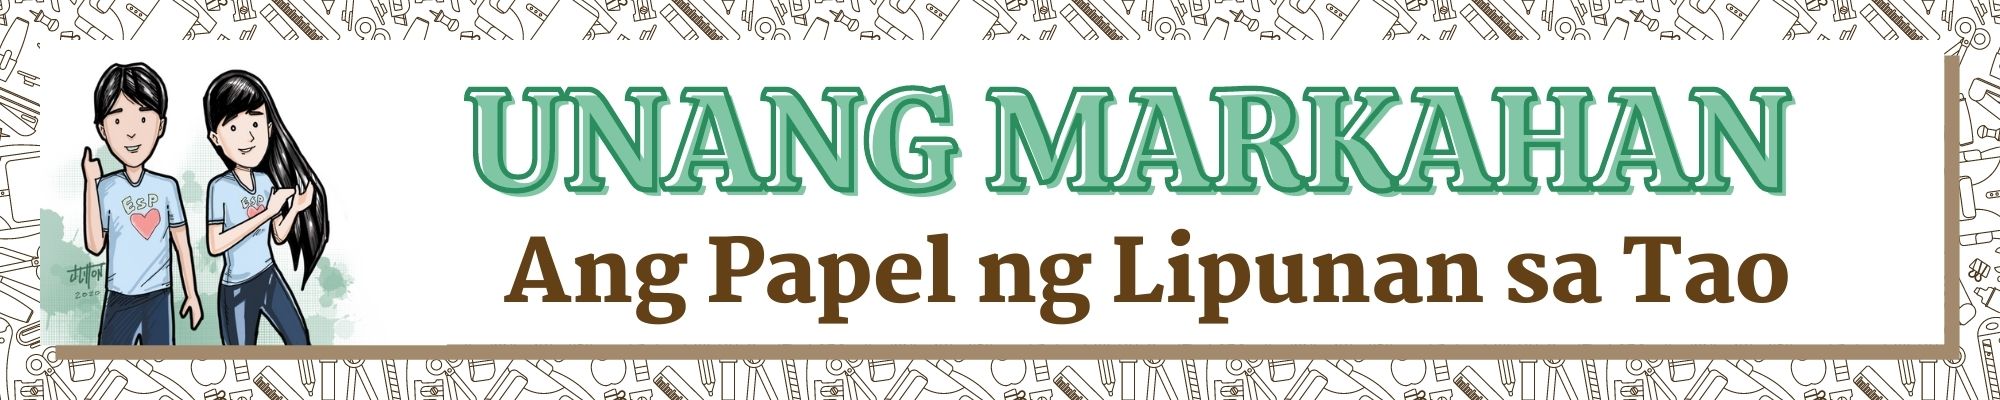 G9 - Edukasyon sa Pagpapakatao - Unang Markahan: Ang Papel ng Lipunan sa Tao